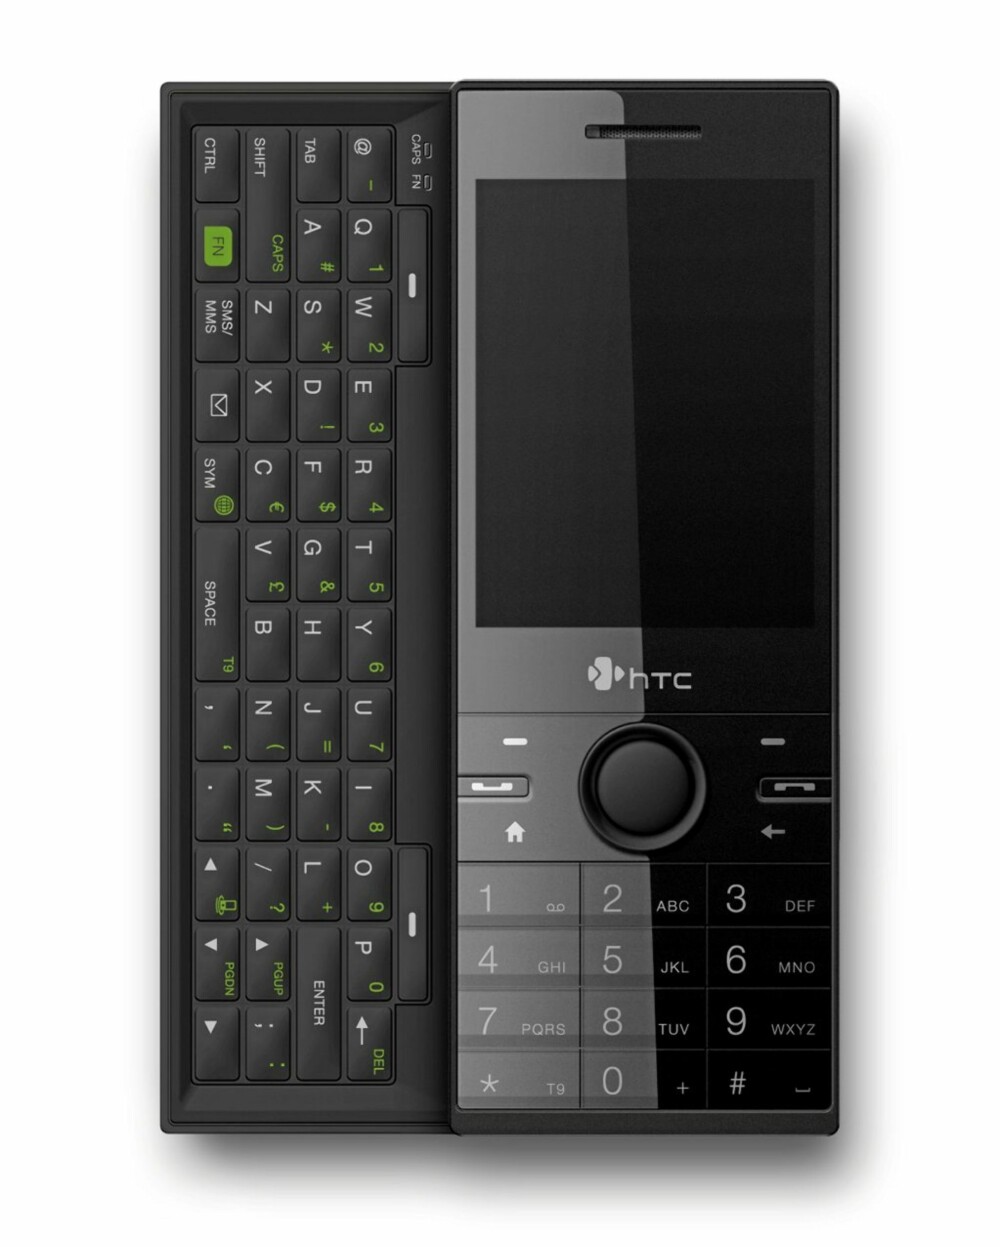 Som sine forgjengere har HTC S740 et tastatur som _glides_ frem fra telefonens underside. Det gjør at man kan kan bruke begge hender når man skriver meldinger eller e-post.